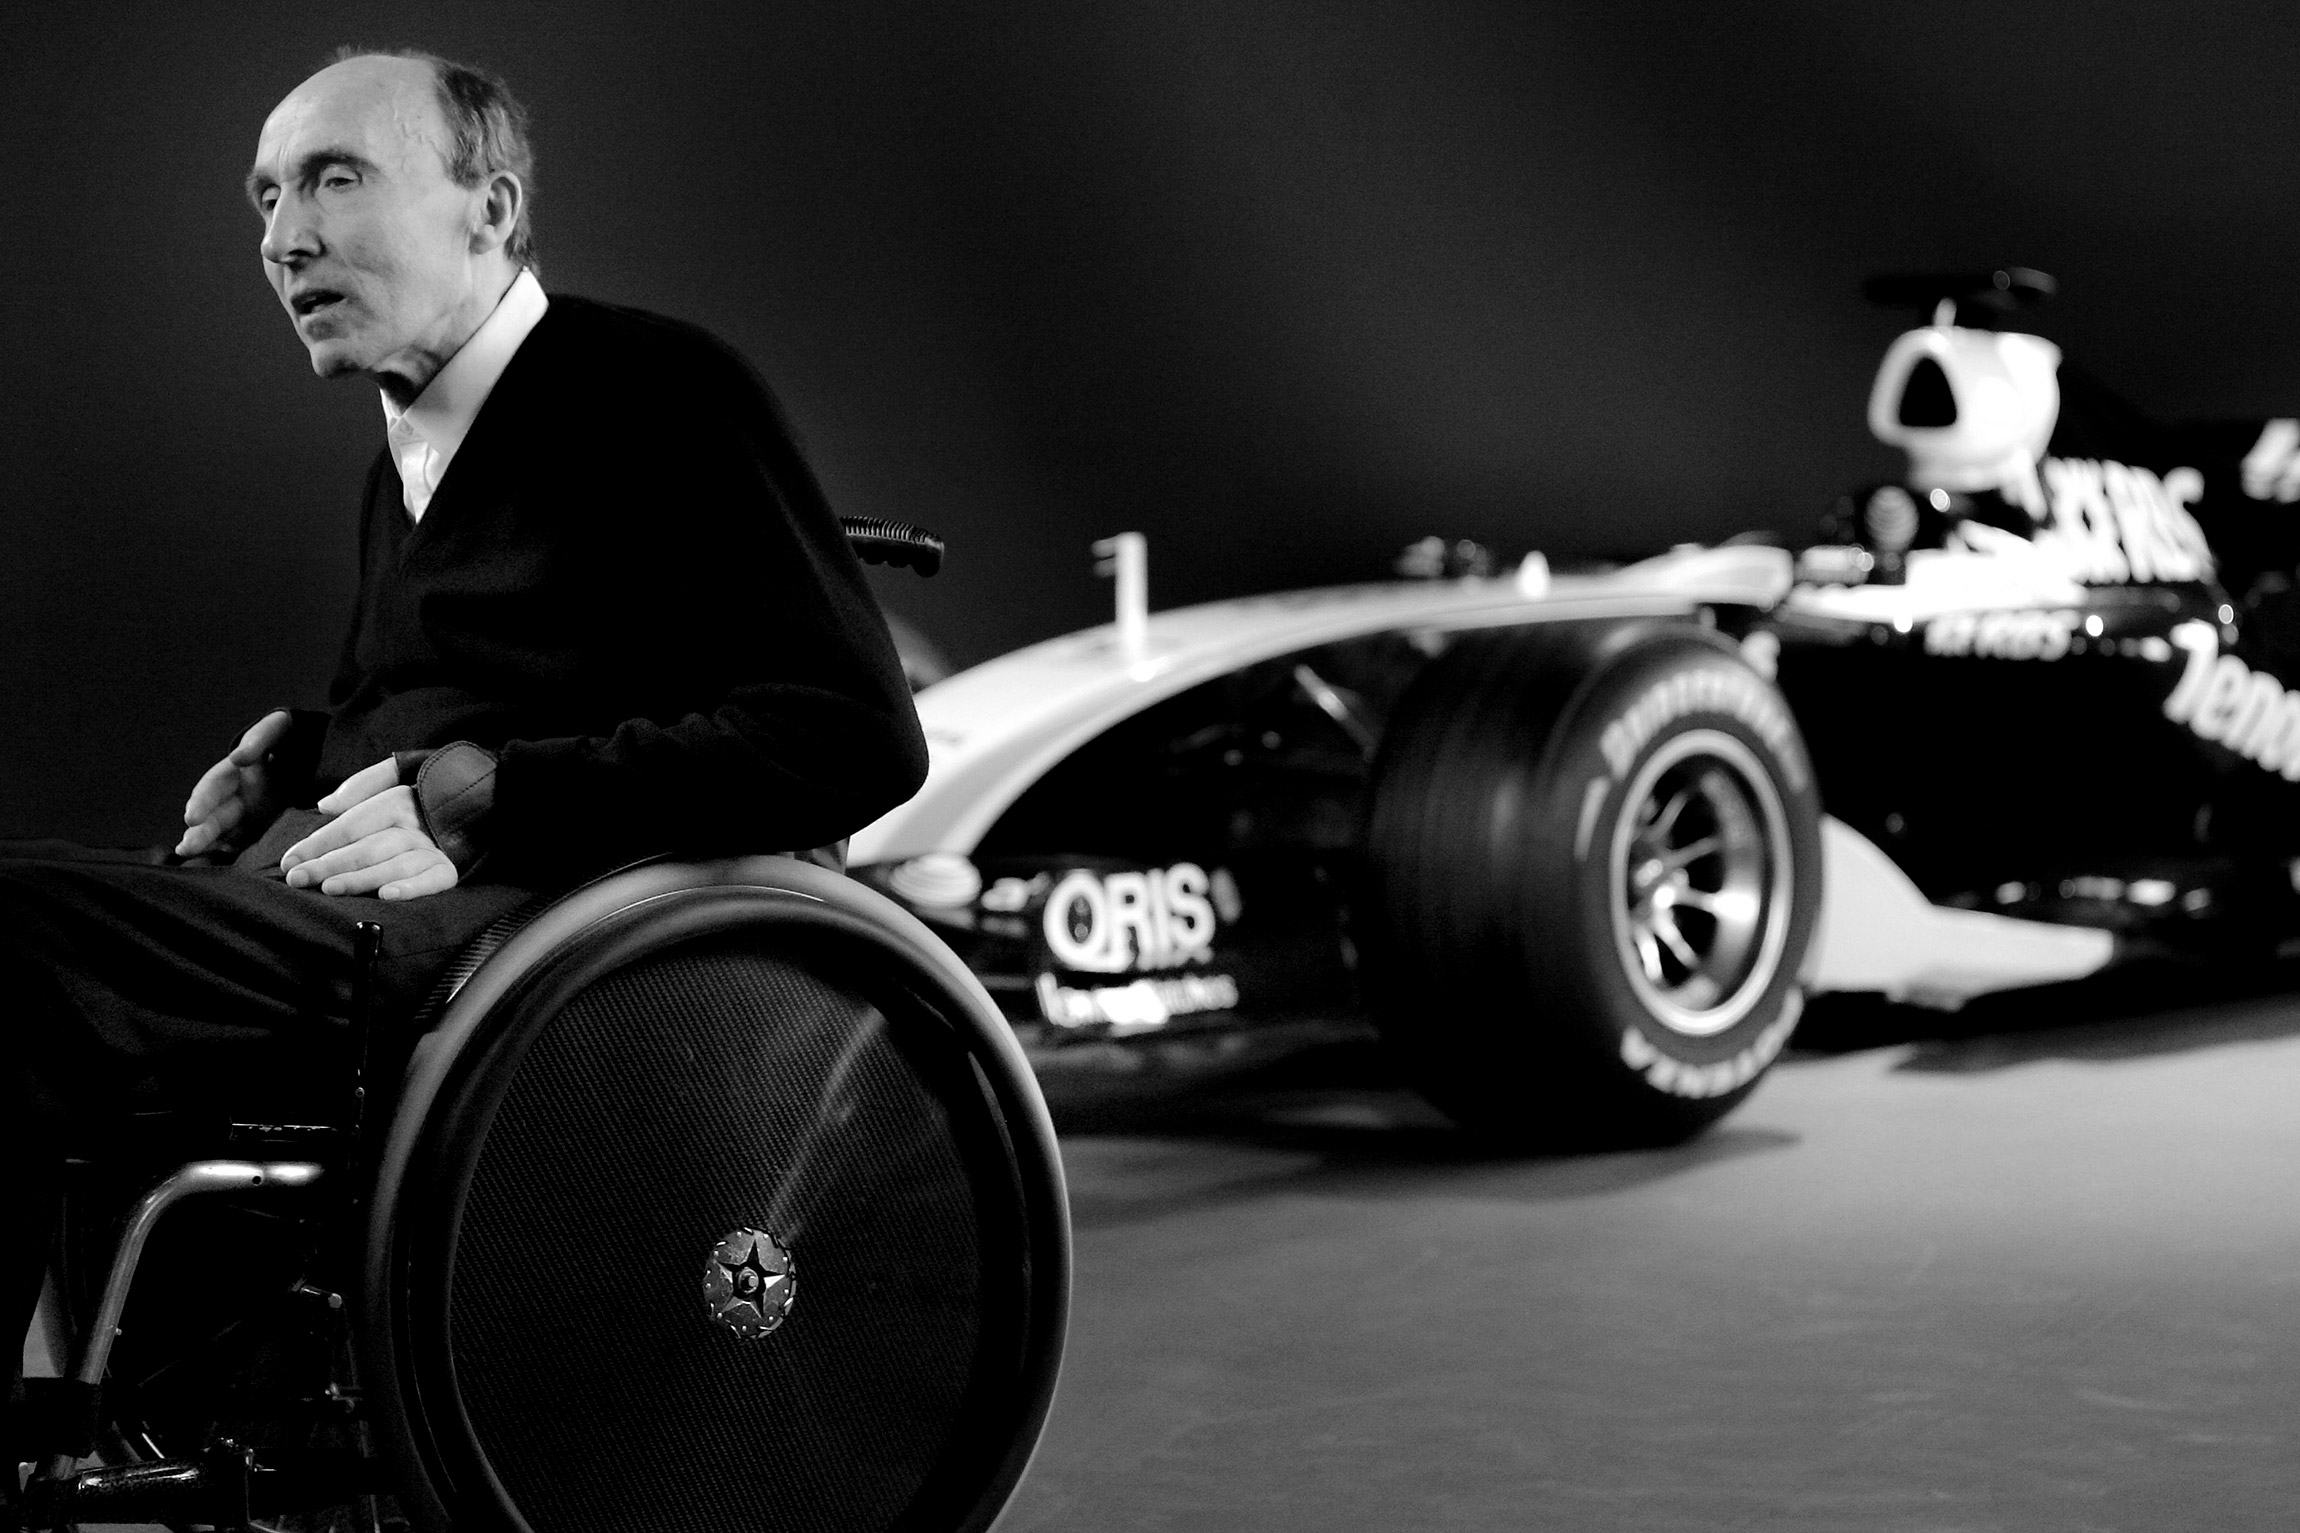 Фрэнк Уильямс известен прежде всего как основатель и бывший глава команды &laquo;Формулы-1&raquo; Williams. Он основал ее в 1966 году. Williams девять раз выигрывала Кубок конструкторов &laquo;Формулы-1&raquo; в период с 1980 по 1997 год, всего на счету команды 114 побед в Гран-при. В 1999 году Уильямс получил титул рыцаря Британской империи.

Фрэнк Уильямс умер 28 ноября в возрасте 79 лет